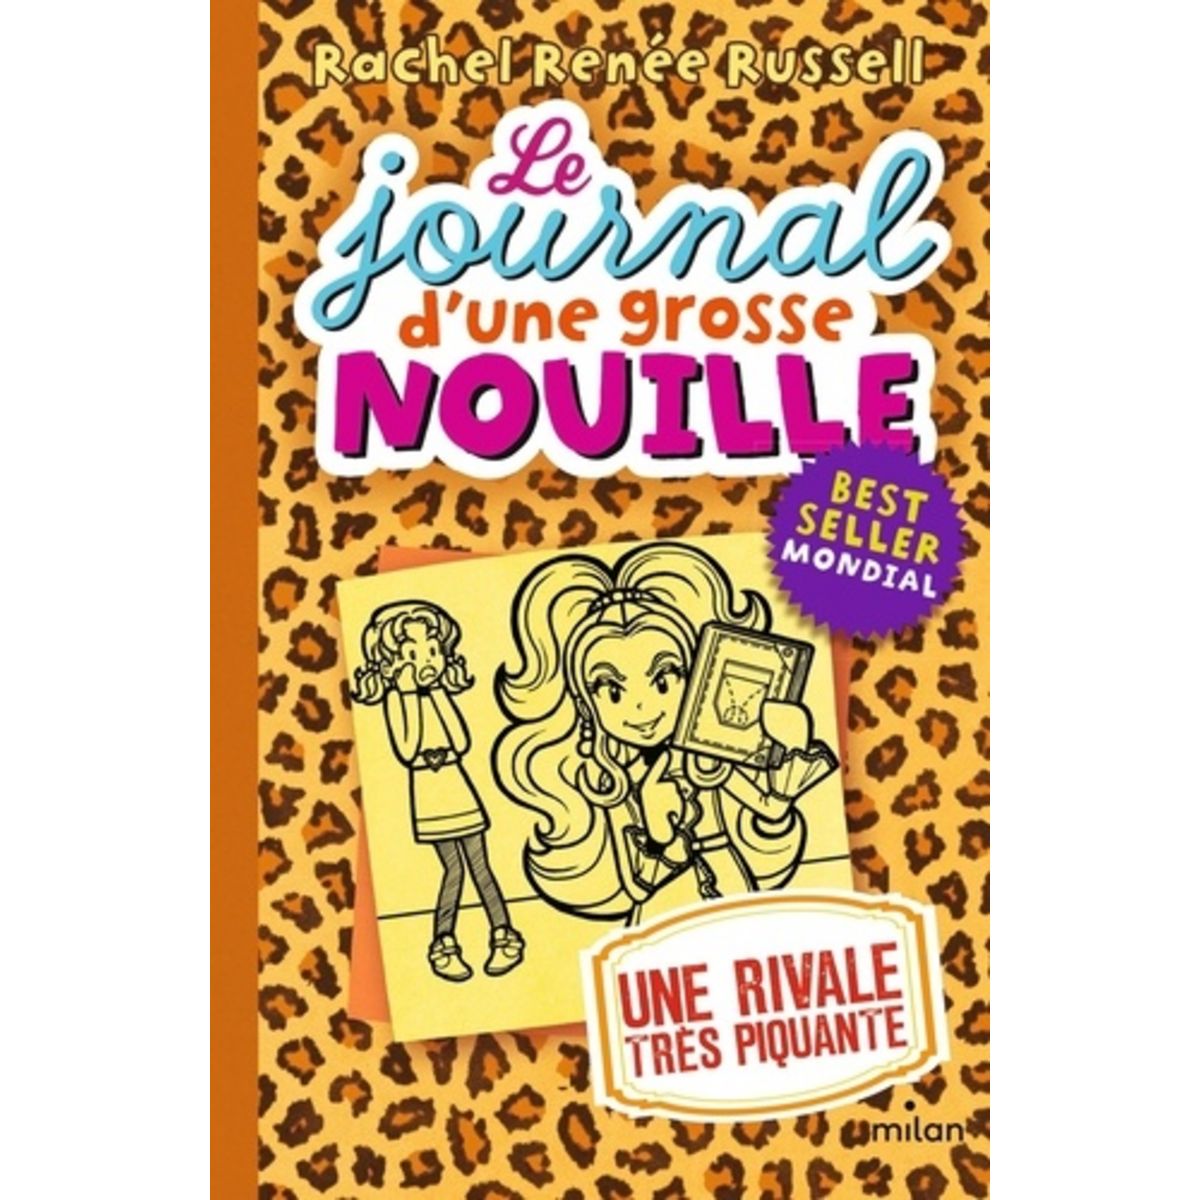  LE JOURNAL D'UNE GROSSE NOUILLE TOME 9 : UNE RIVALE TRES PIQUANTE, Russell Rachel Renée